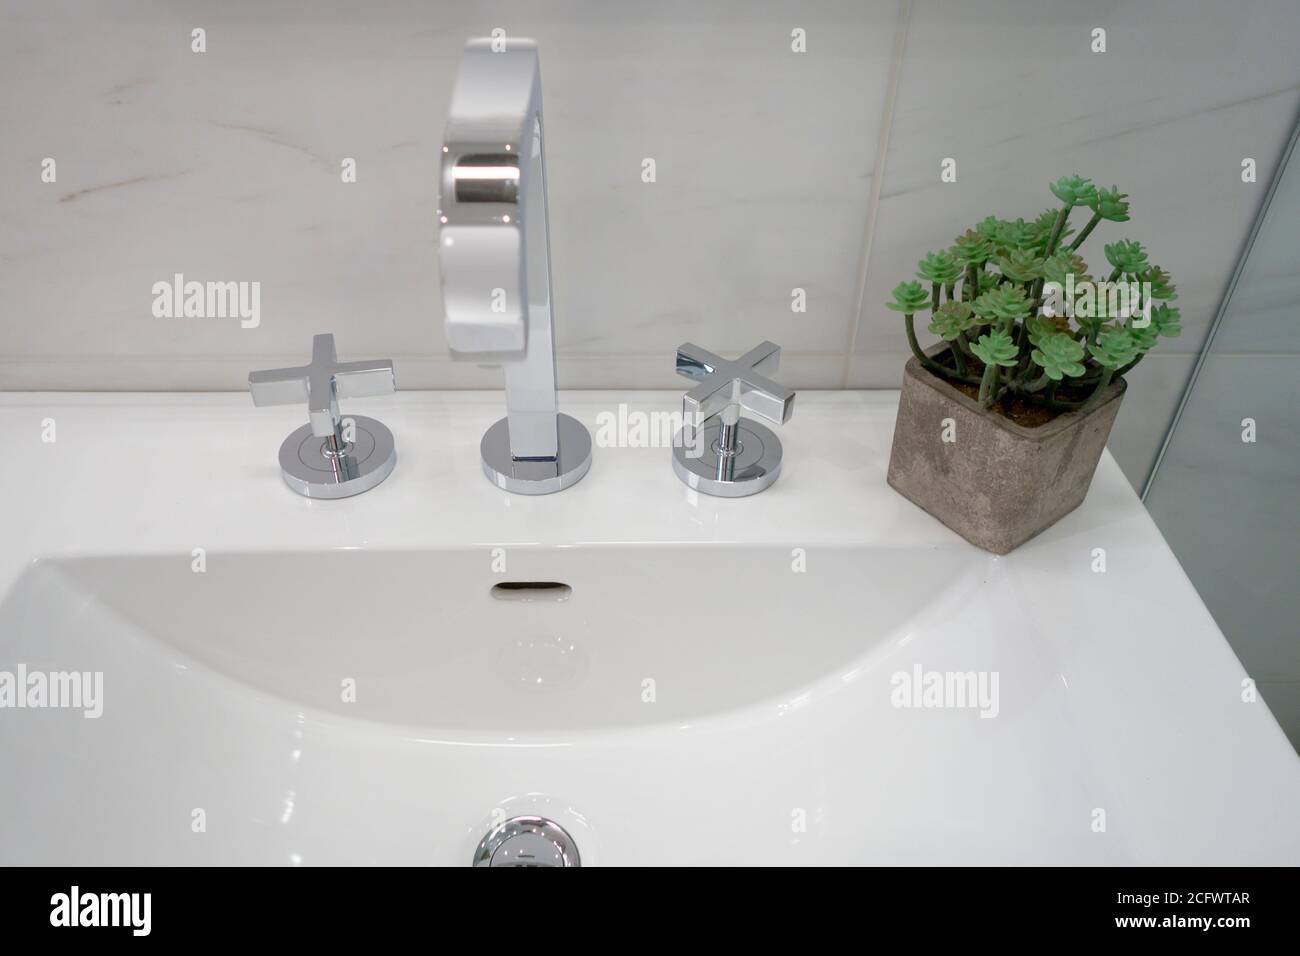 lavabo con rubinetti per bagno con decorazioni in piante e stile moderno Foto Stock